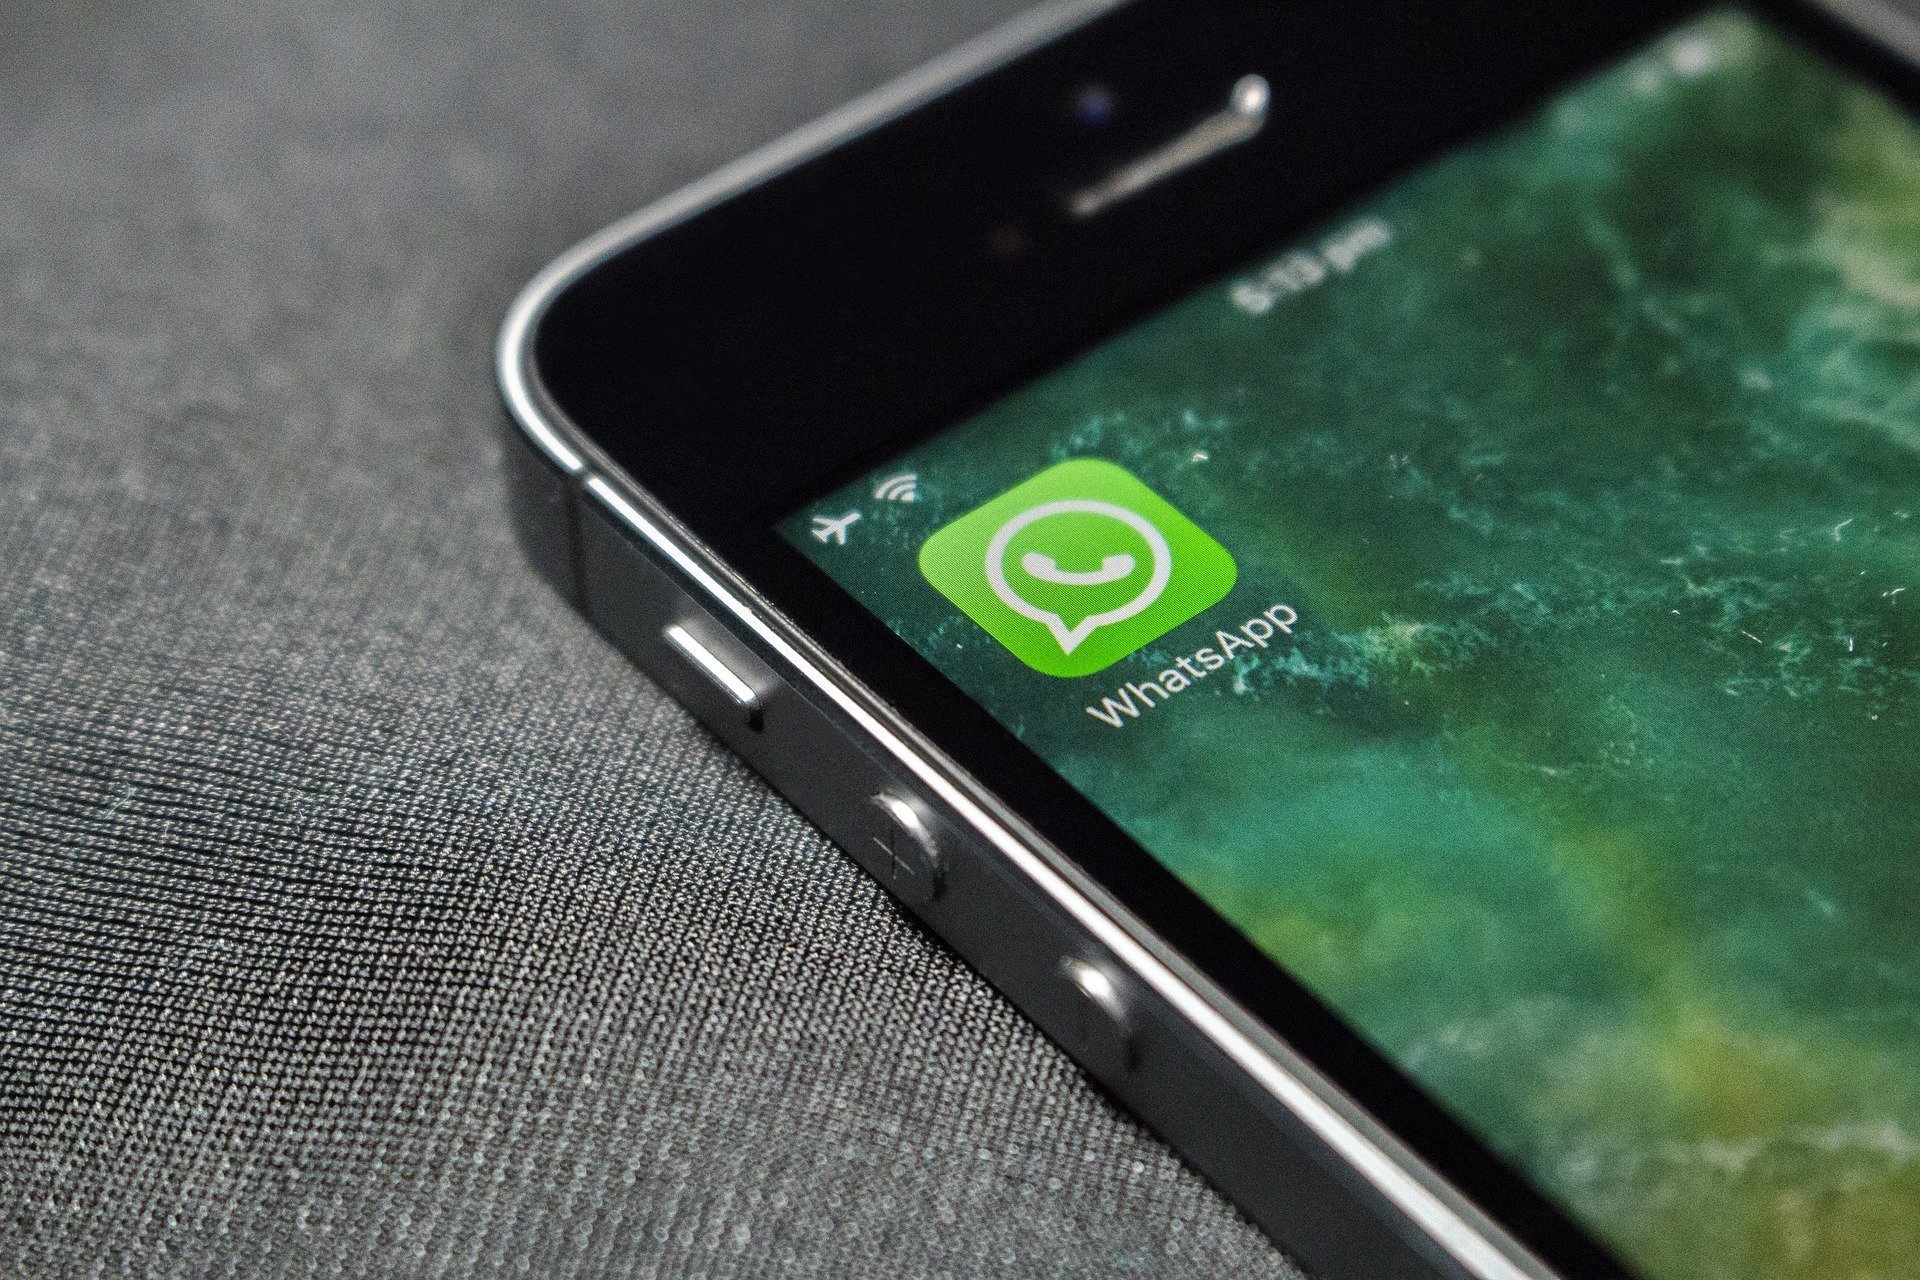 

В Госдуме России усомнились в законности новой политики конфиденциальности WhatsApp

